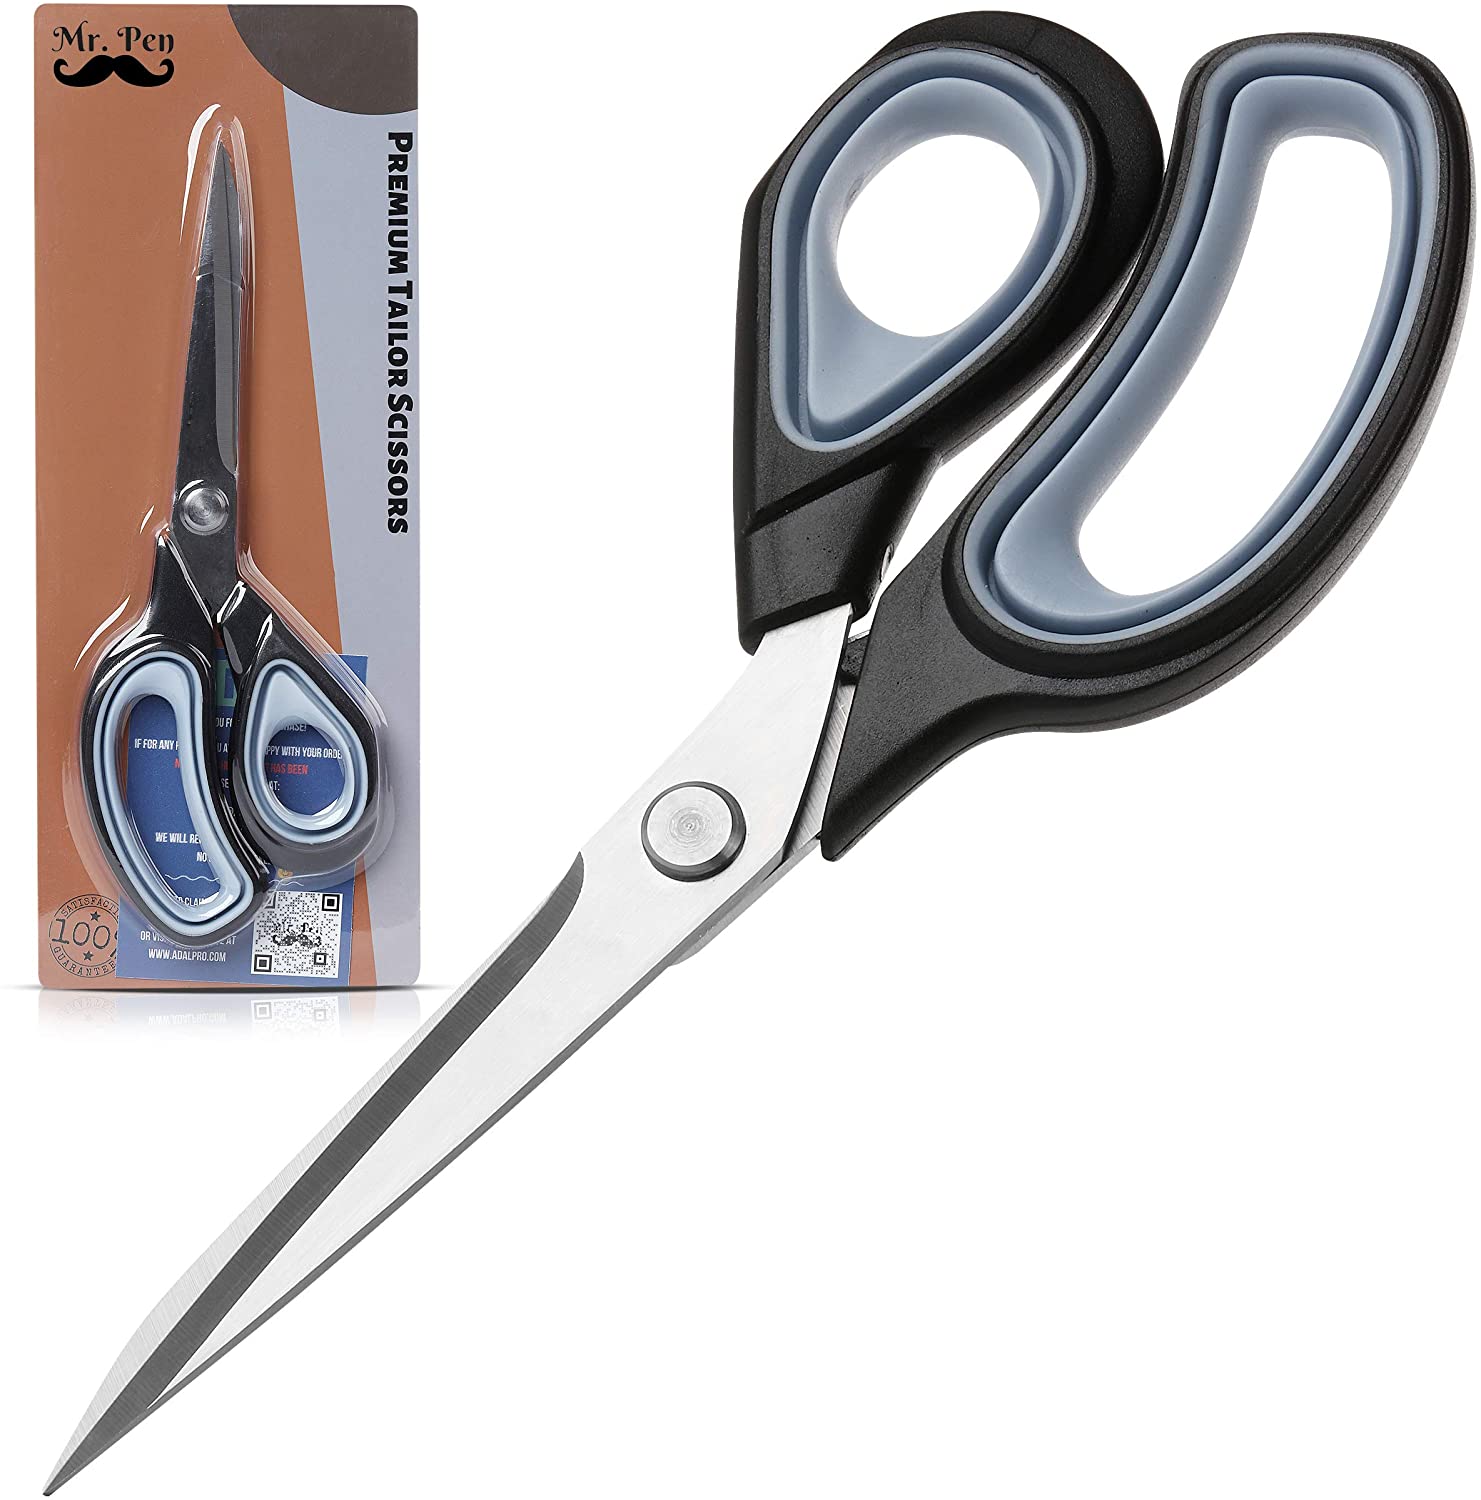 Mr. Pen- Scissors, Sewing Scissors, 9.5 inch Premium Tailor